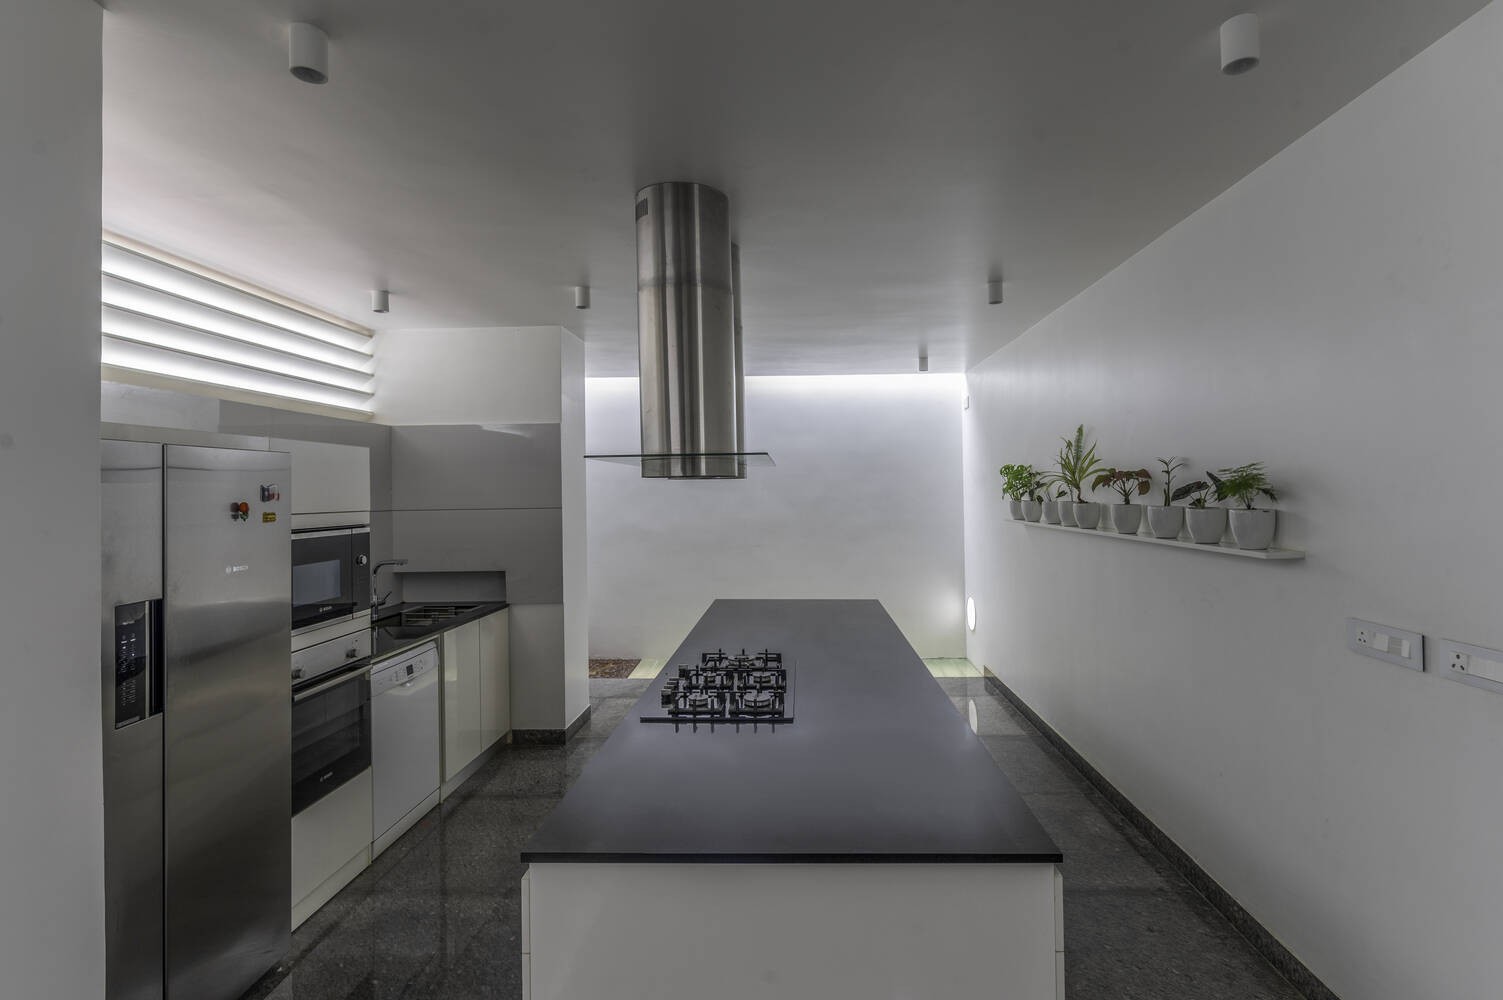 
Tầng trệt có thiết kế bố trí một khe hở vừa tận dụng thêm ánh sáng từ bên ngoài chiếu vào lại có tác dụng lọc mùi, khử mùi khu vực bếp
